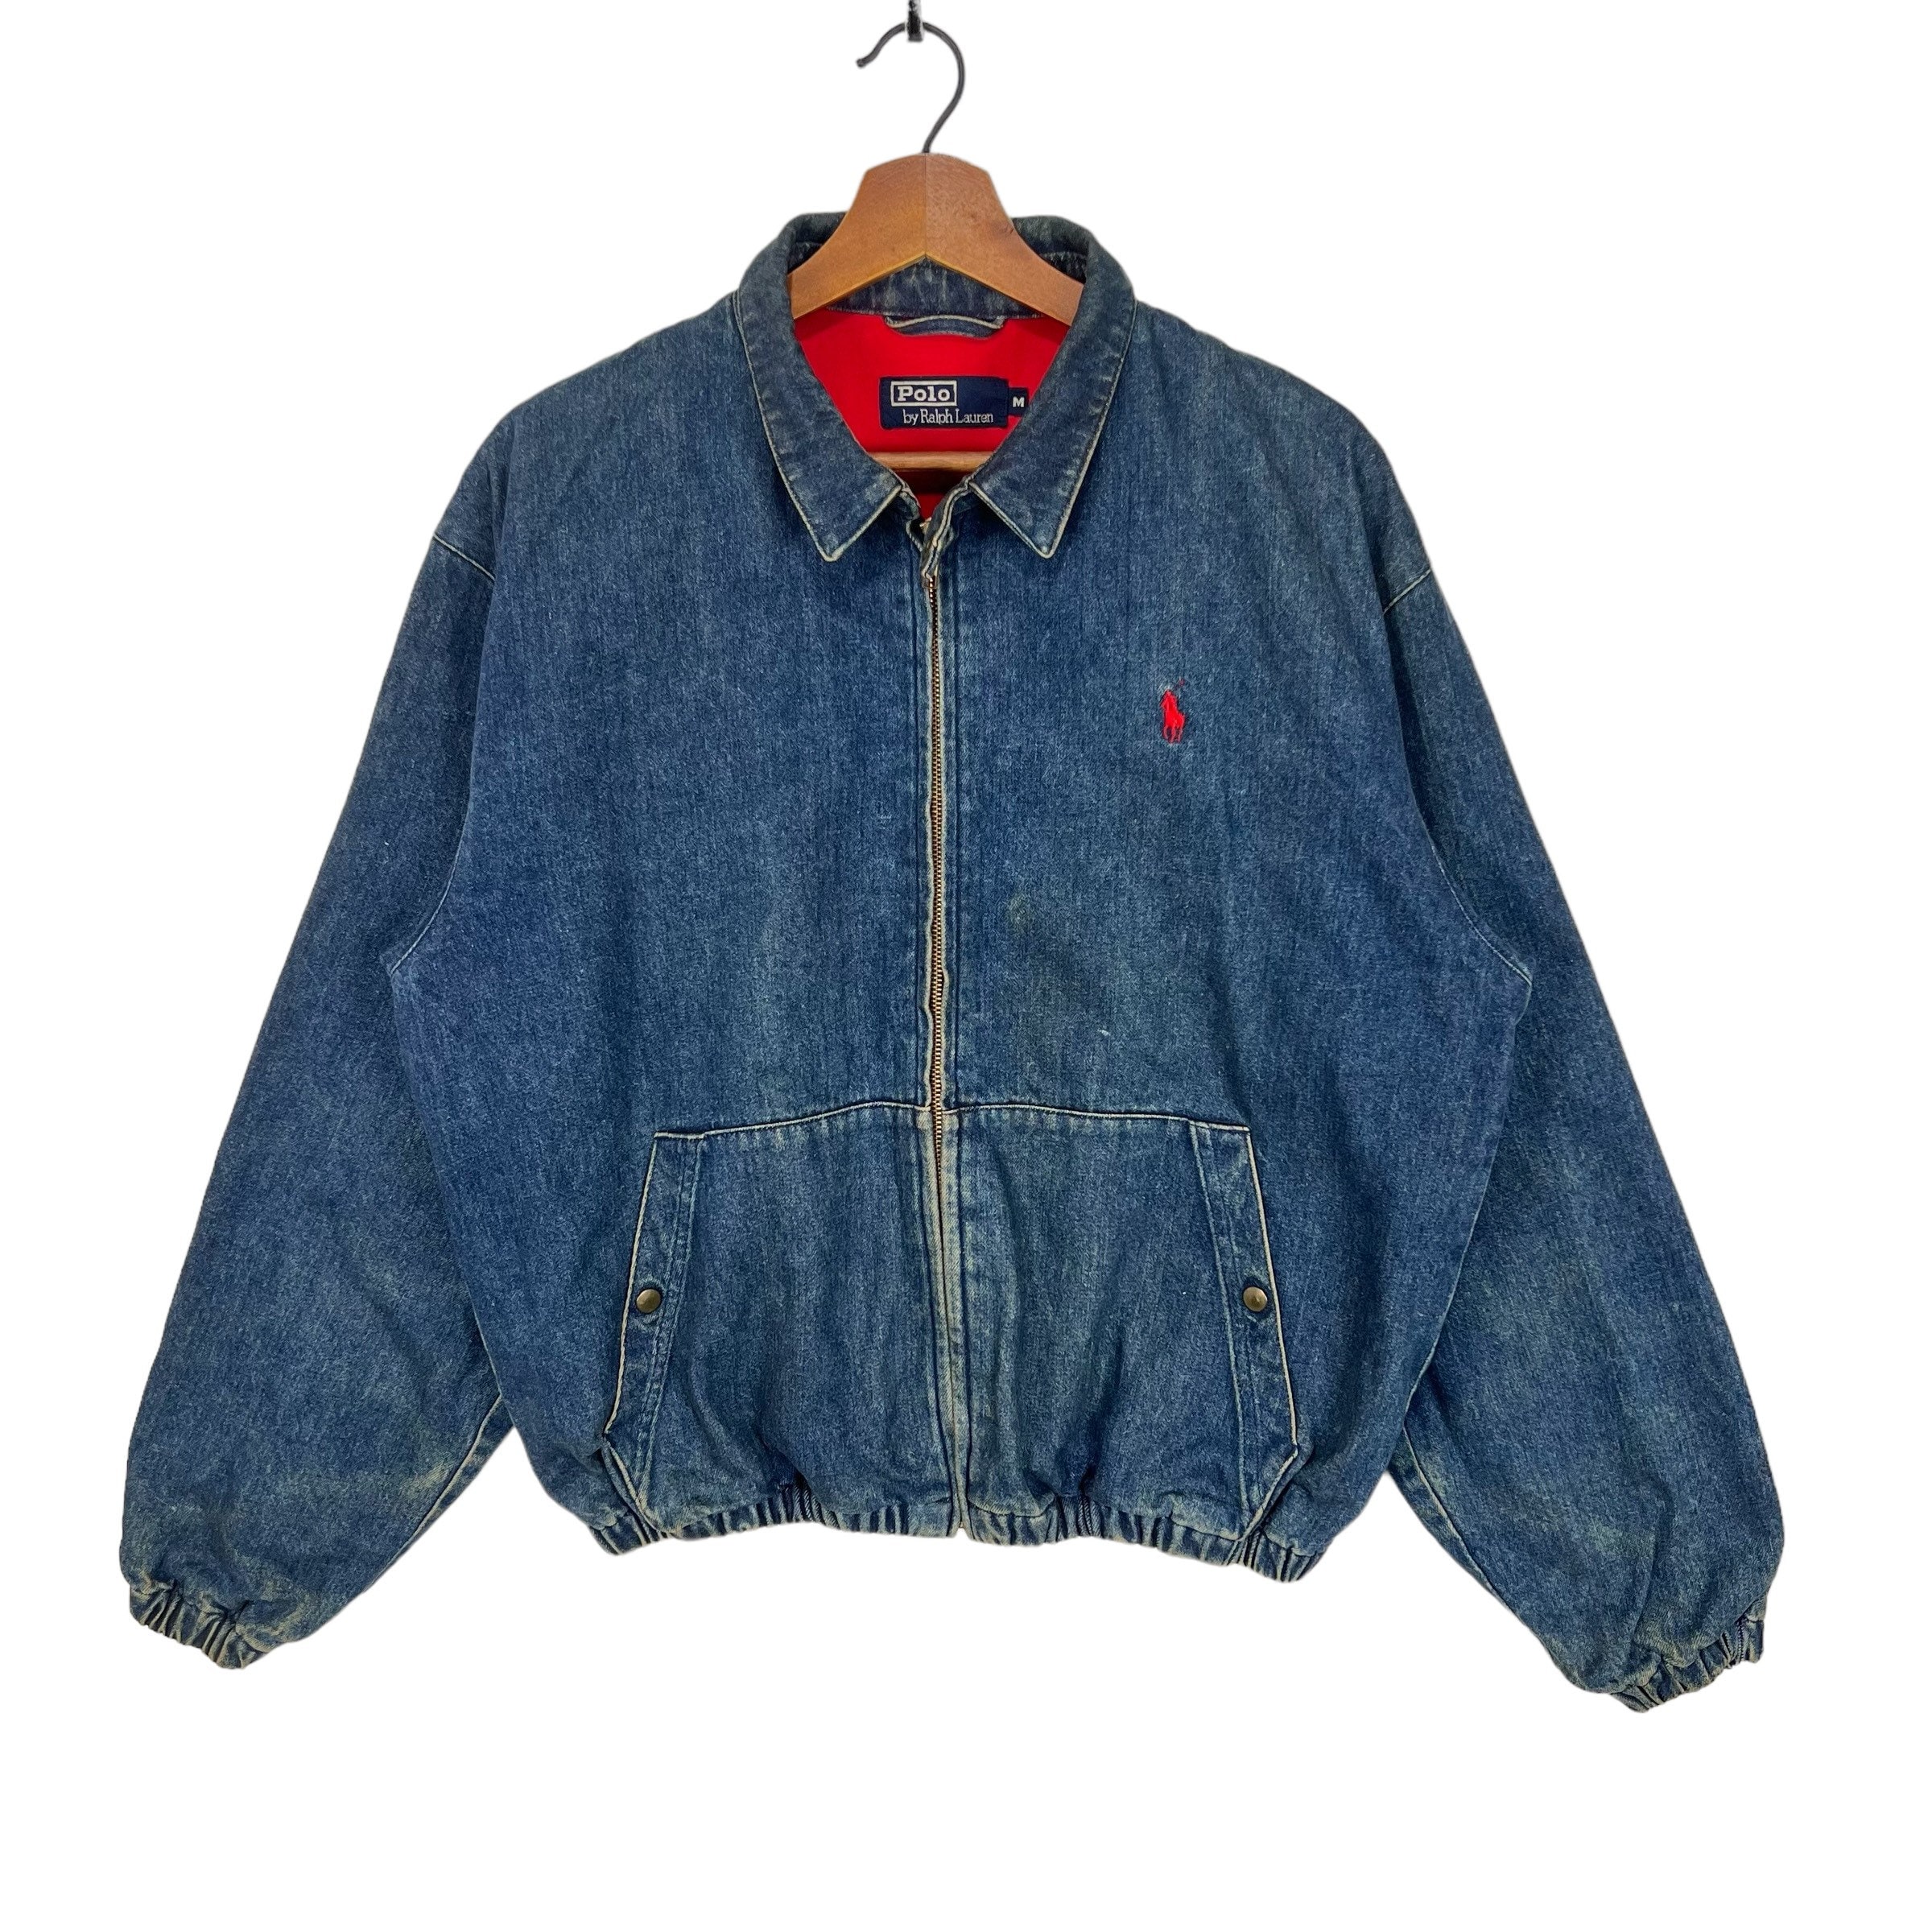 80s vintage polo denim jacketGジャン/デニムジャケット